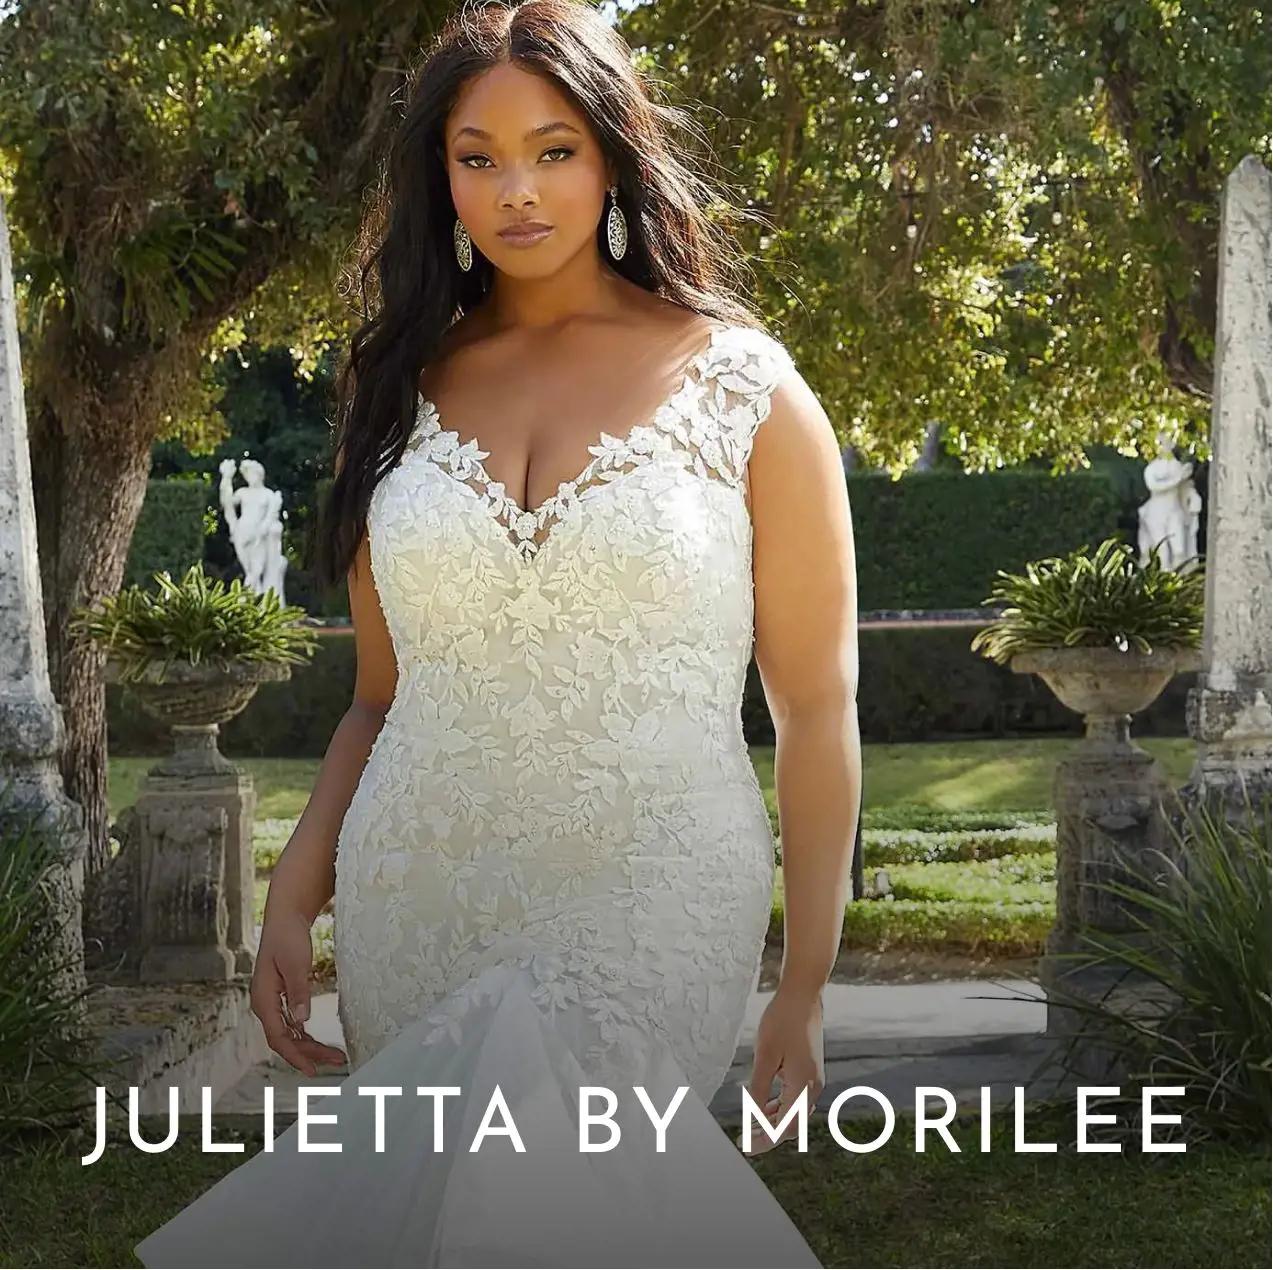 Julietta by Morilee Wedding Dresses